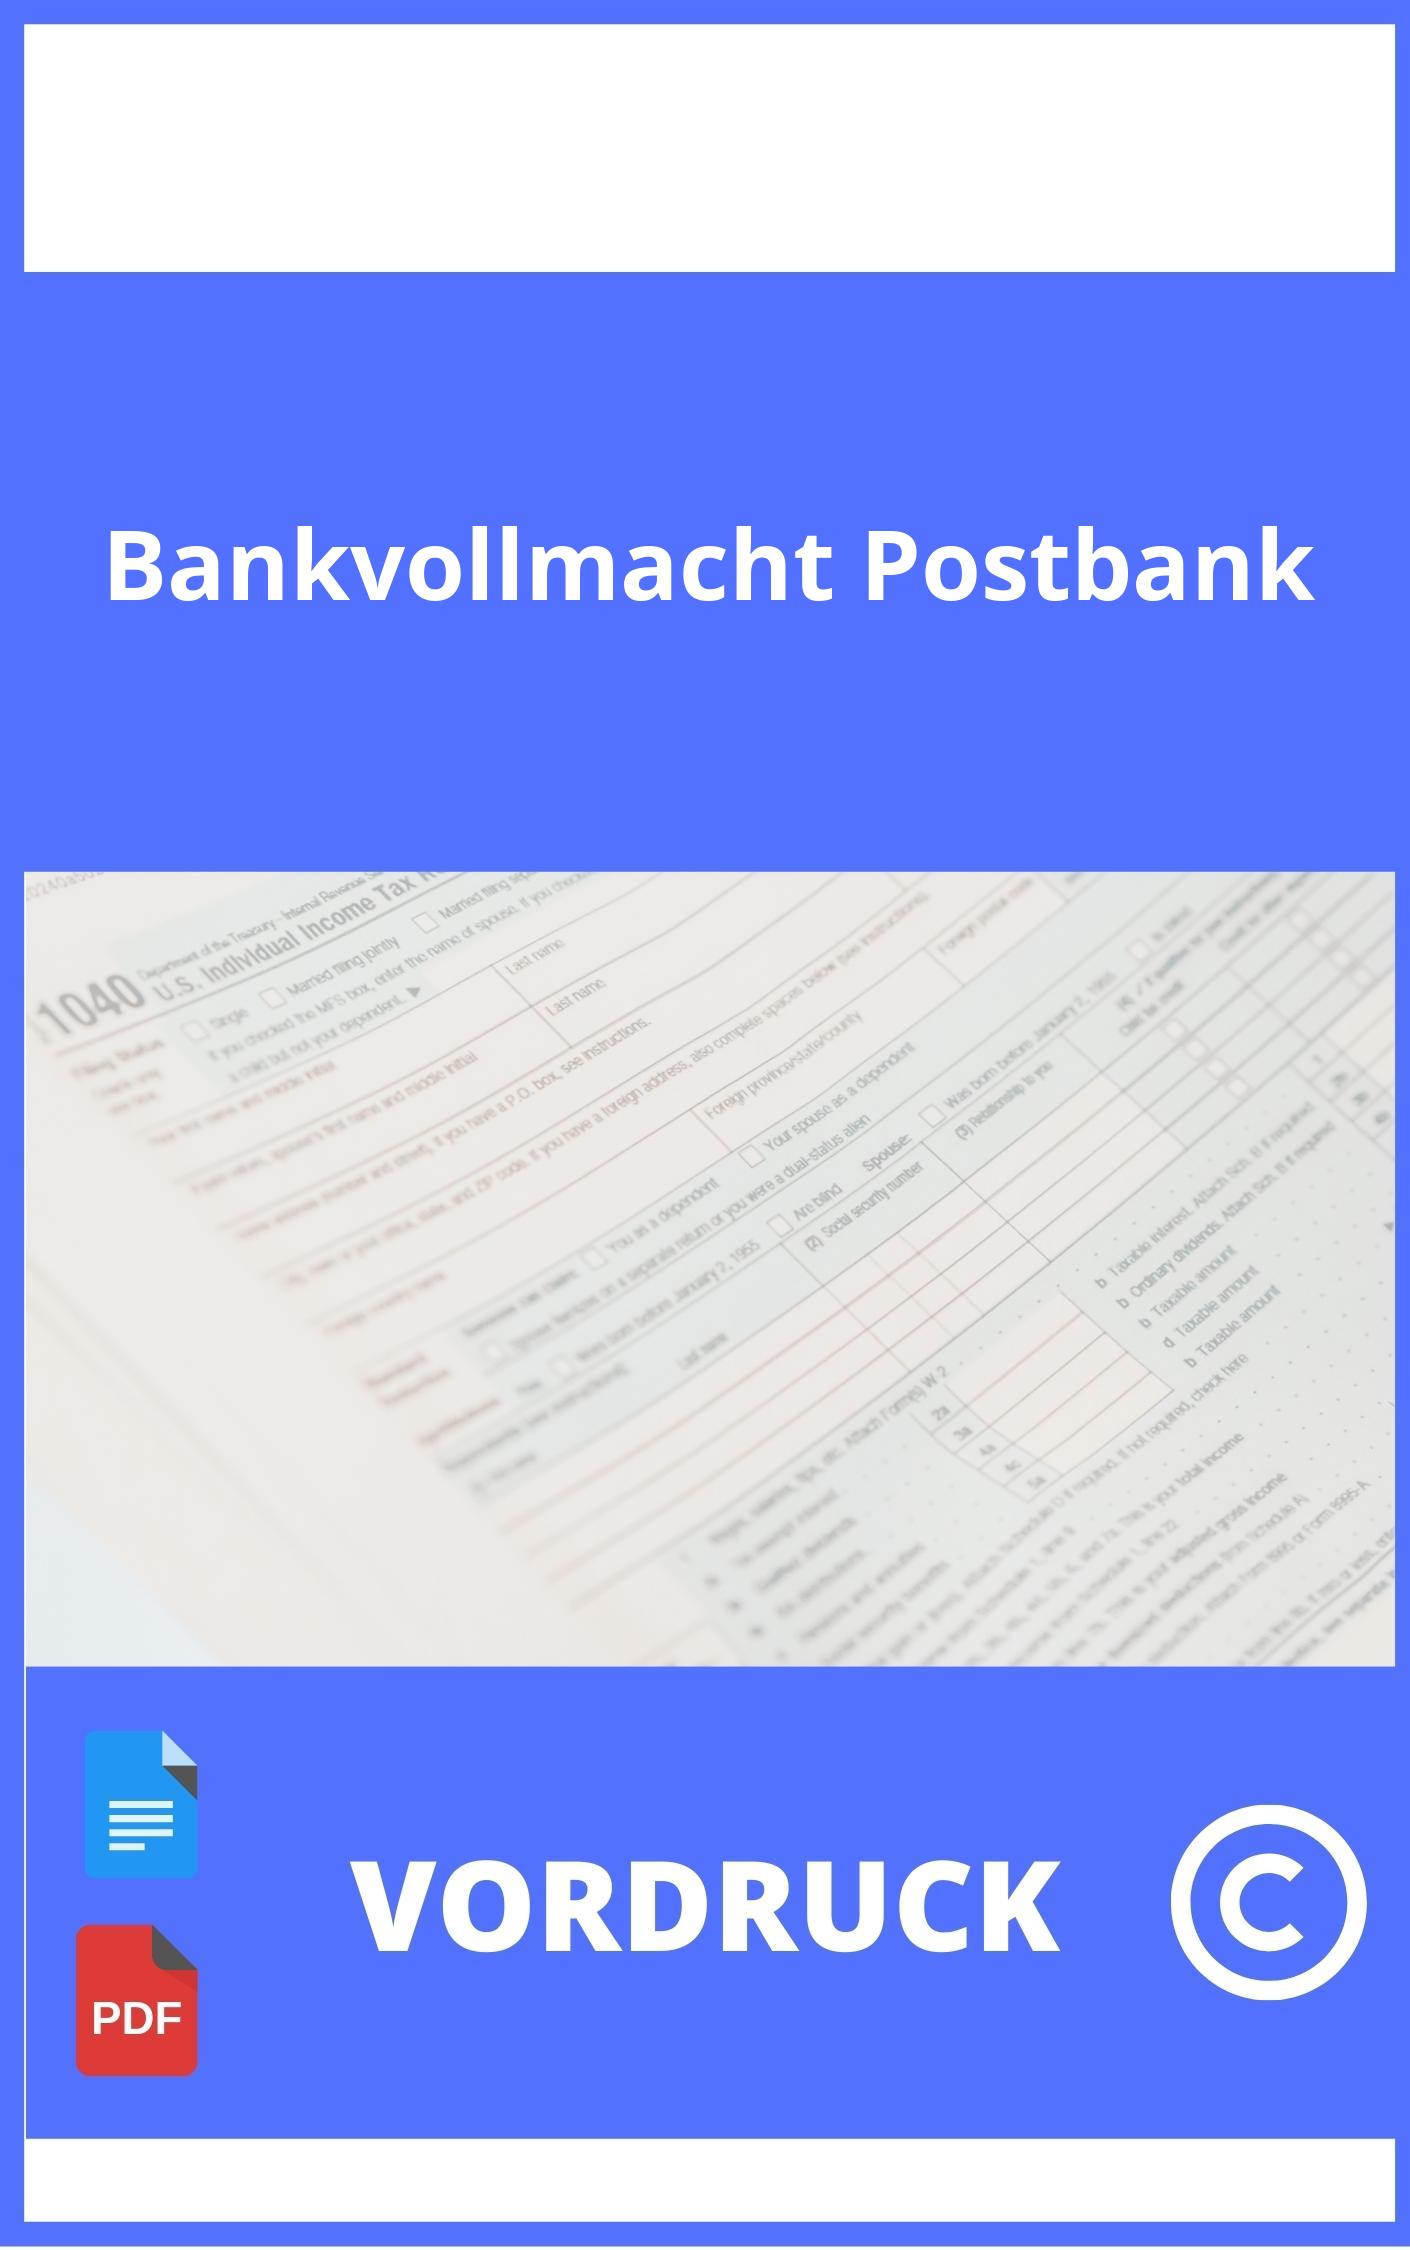 Vordruck Bankvollmacht Postbank